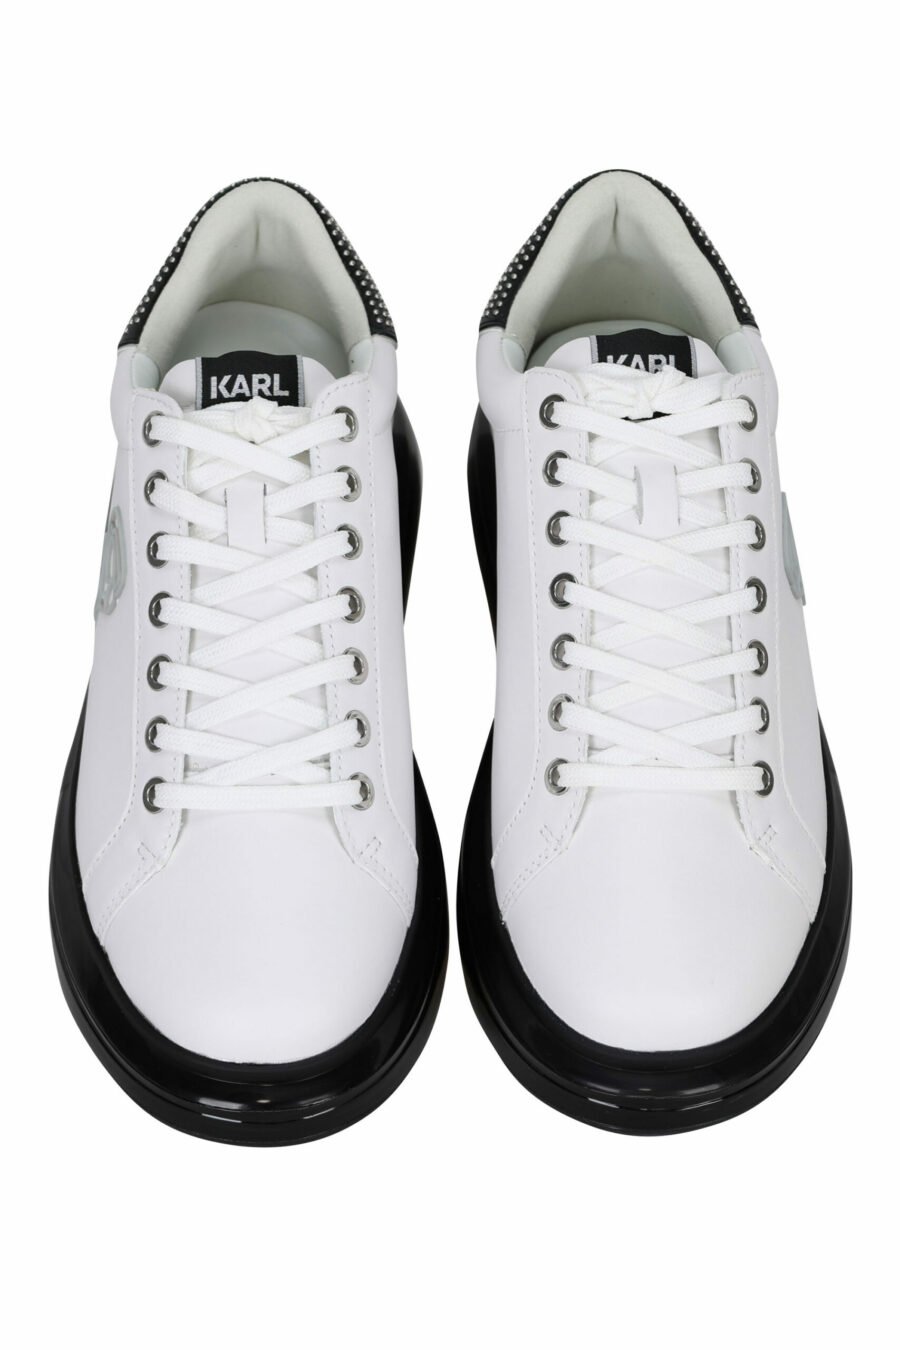 Zapatillas blancas "kapri fushion" con suela negra y logo en contorno - 5059529363467 4 scaled